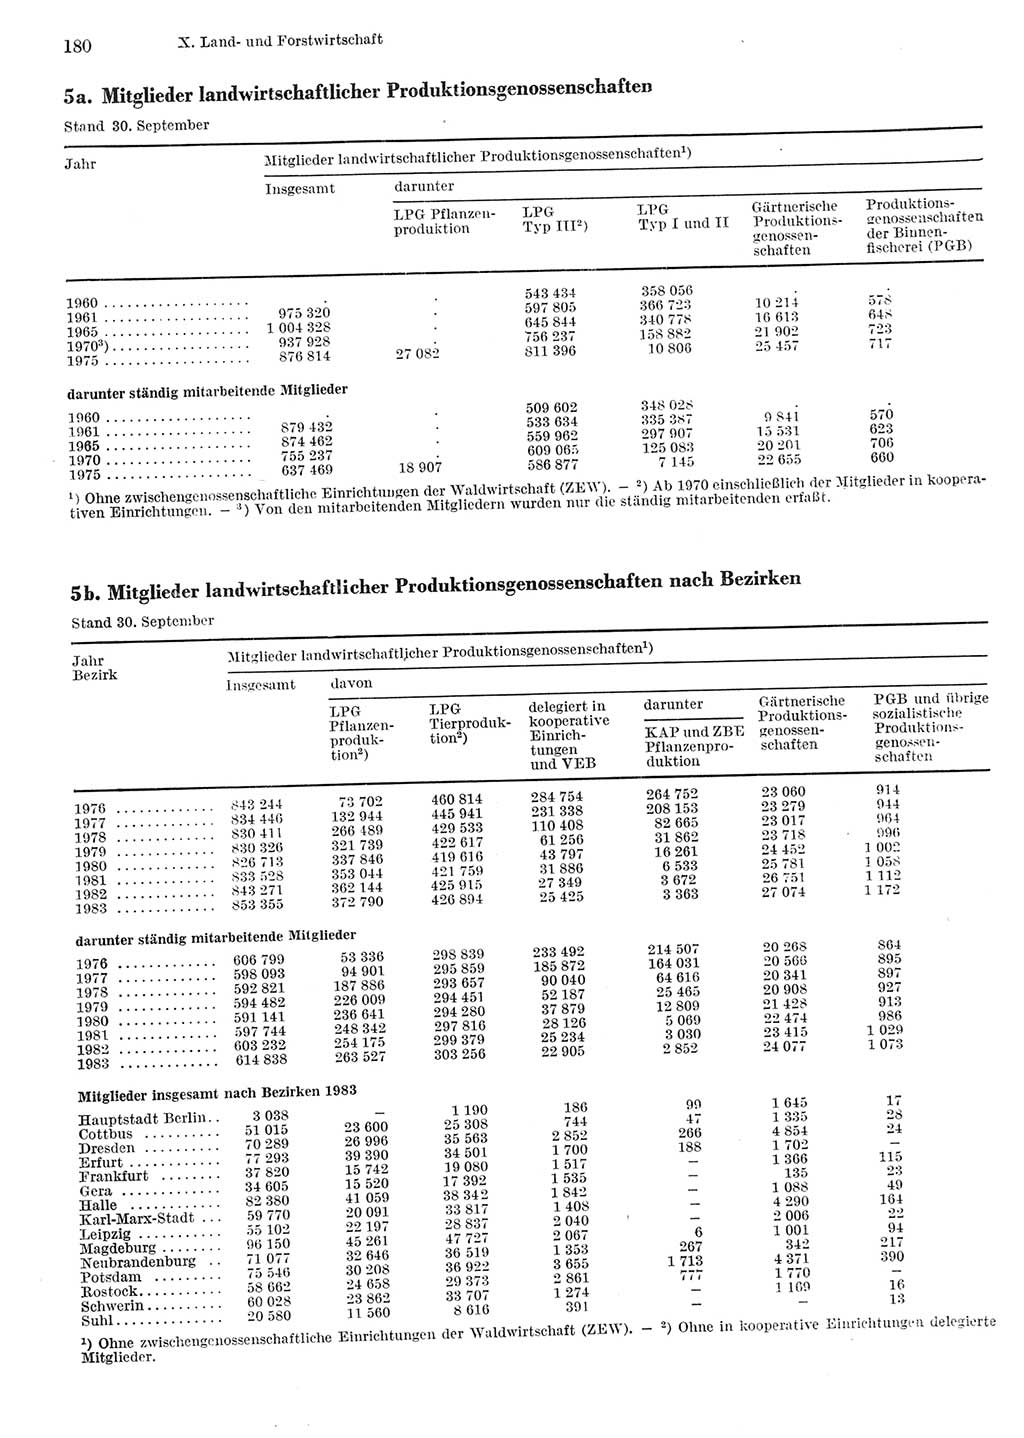 Statistisches Jahrbuch der Deutschen Demokratischen Republik (DDR) 1984, Seite 180 (Stat. Jb. DDR 1984, S. 180)